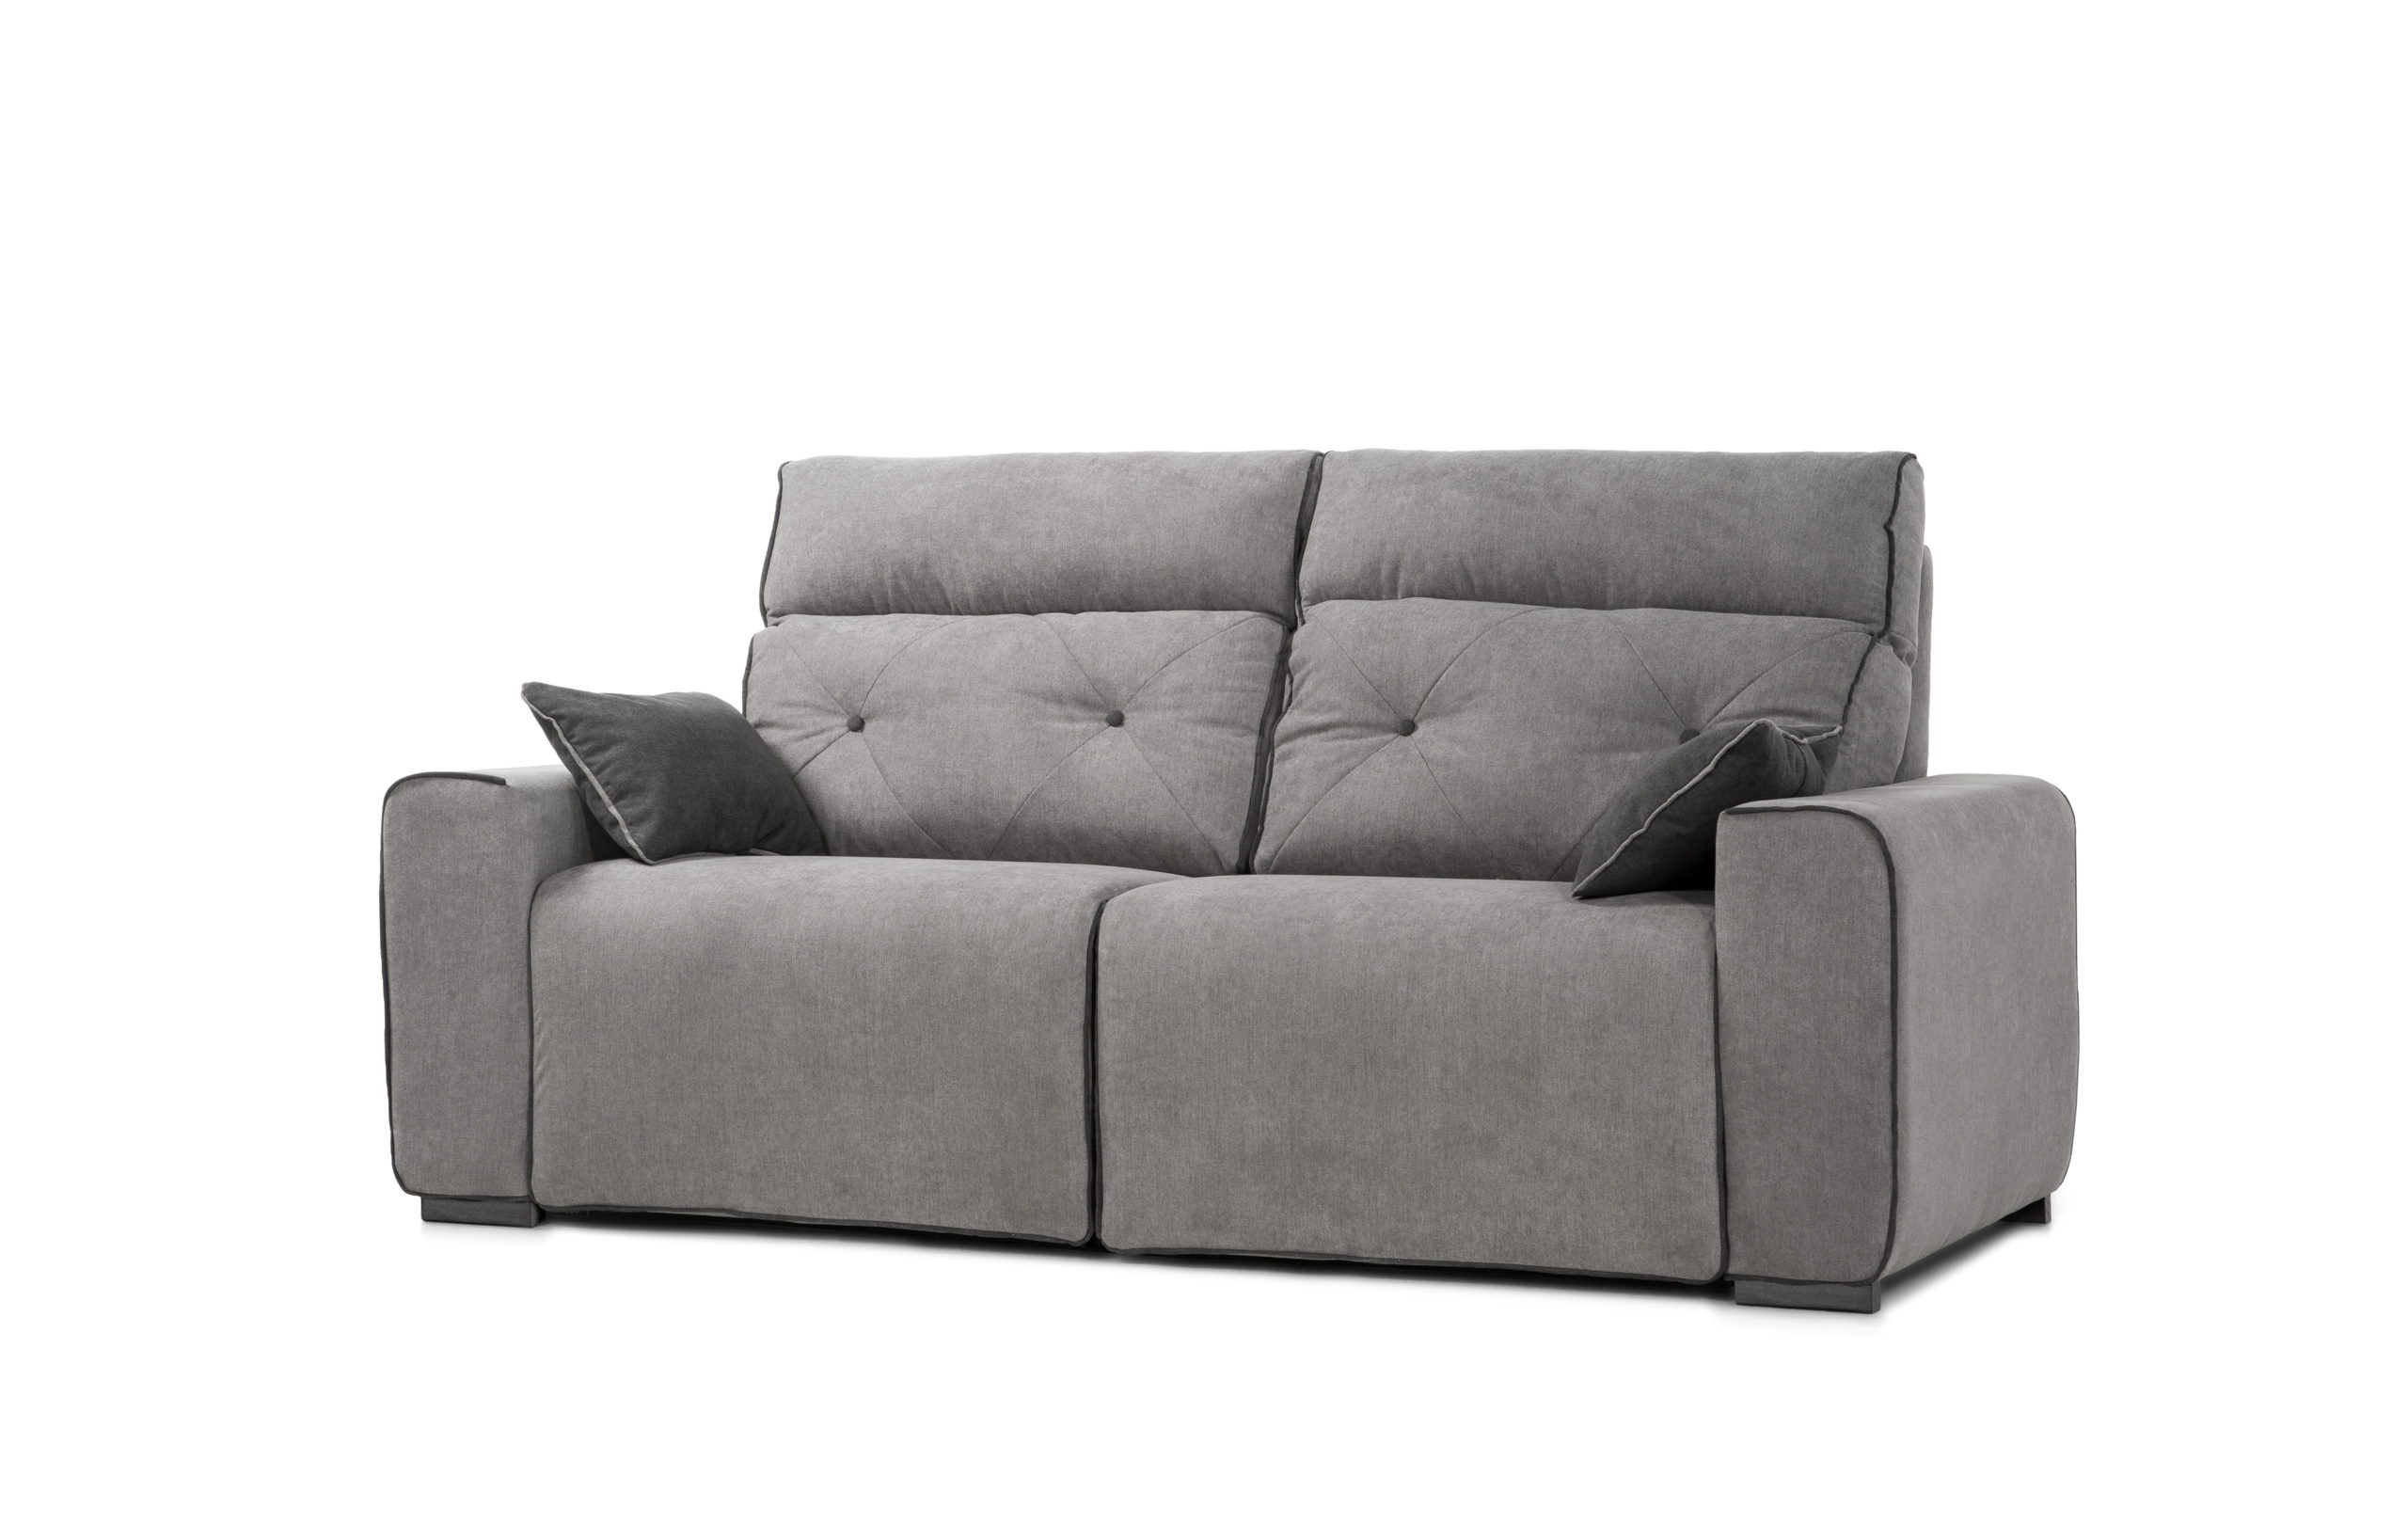 NATIVA sofá modular asientos relax o fijos by Reyes Ordoñez SOFÁ 3 PLAZAS Nativa 005.3 de venta en Muebles ANTOÑÁN León